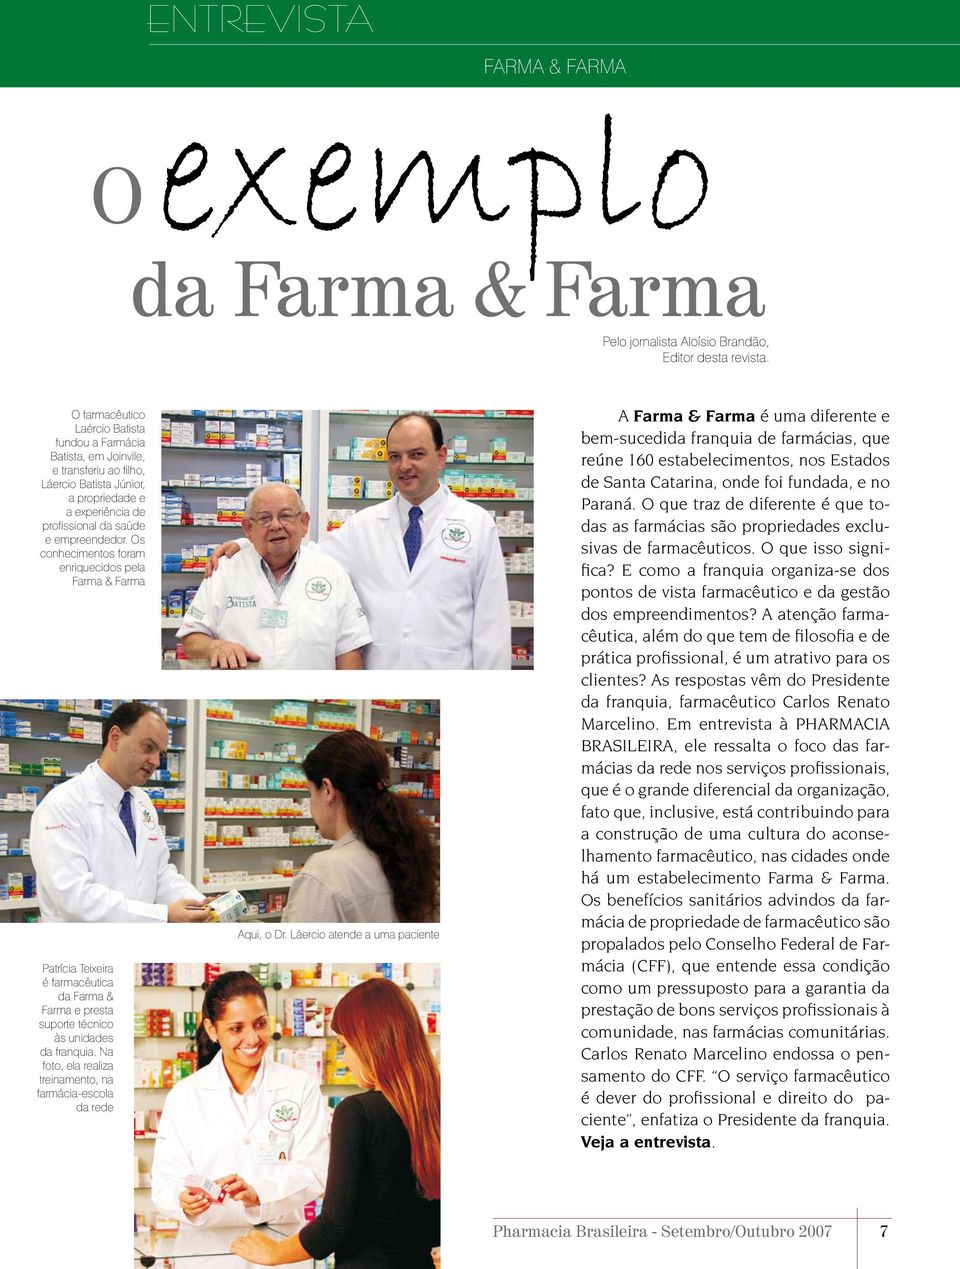 Os conhecimentos foram enriquecidos pela Farma & Farma Patrícia Teixeira é farmacêutica da Farma & Farma e presta suporte técnico às unidades da franquia.